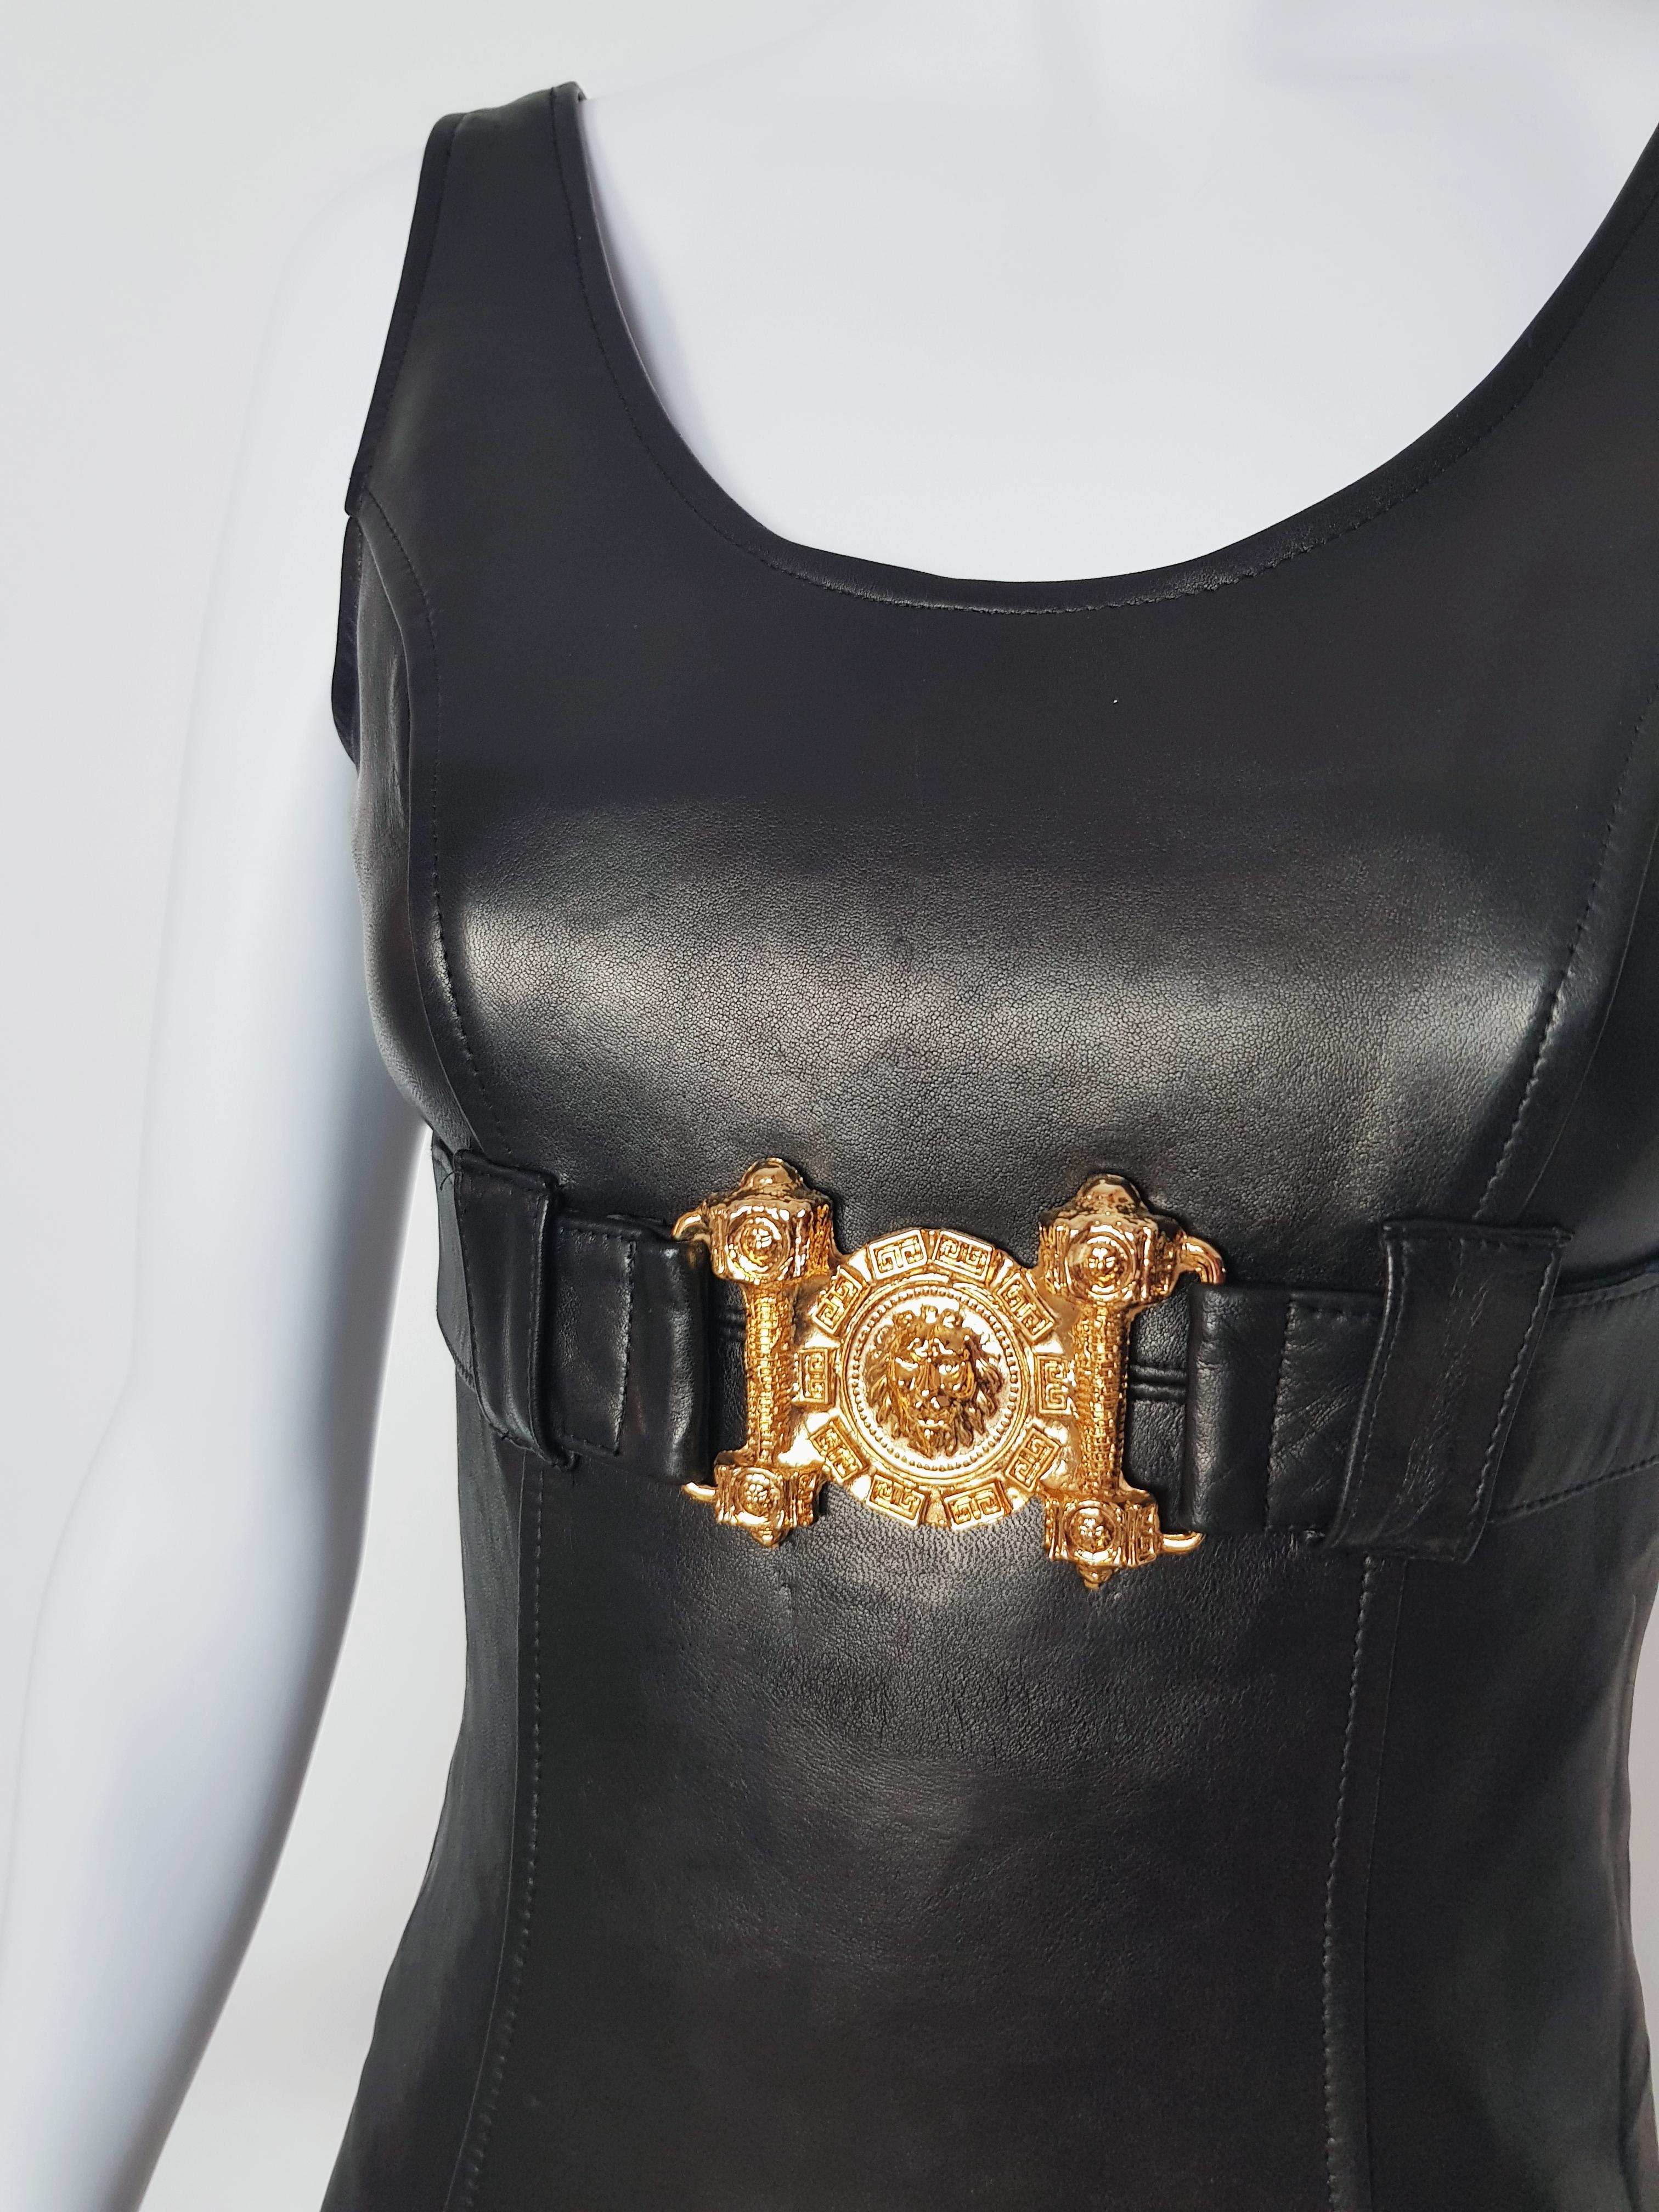 Cette robe vintage d'Alberto By nous vient directement des années 90, et c'est aussi une belle ode à l'univers de Versace.

-Lions en métal de couleur dorée
-Cuir avant
-Tissu tricoté à l'arrière très extensible
-Doublé dans la partie cuir
-Fabriqué